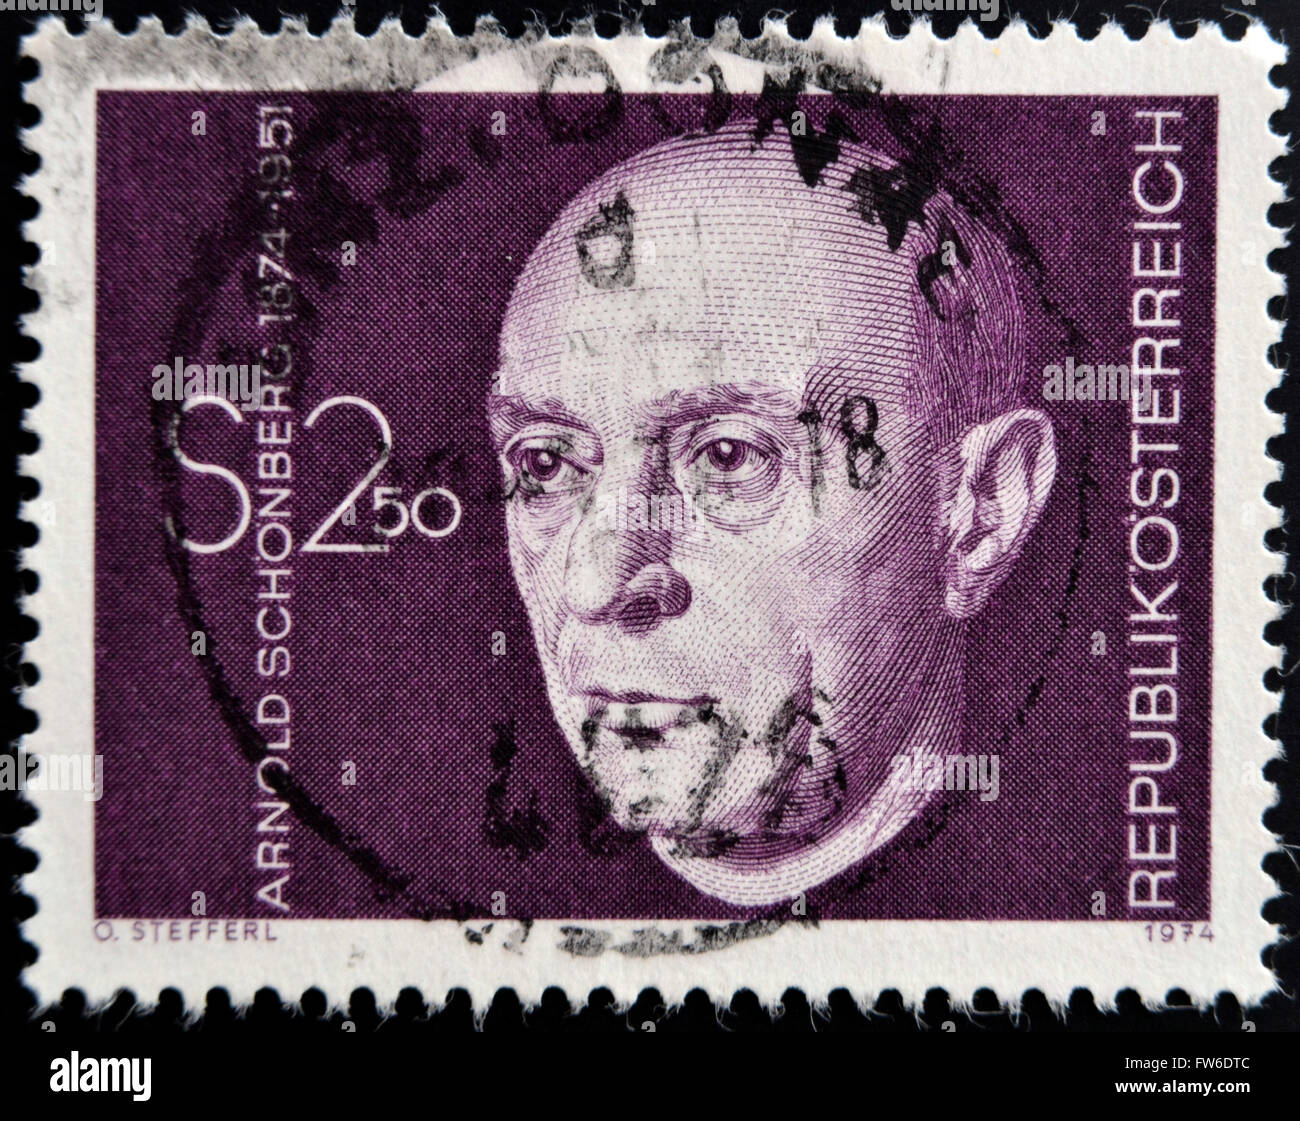 AUSTRIA - CIRCA 1974: A stamp printed in Austria shows Arnold Schonberg, composer, circa 1974 Stock Photo